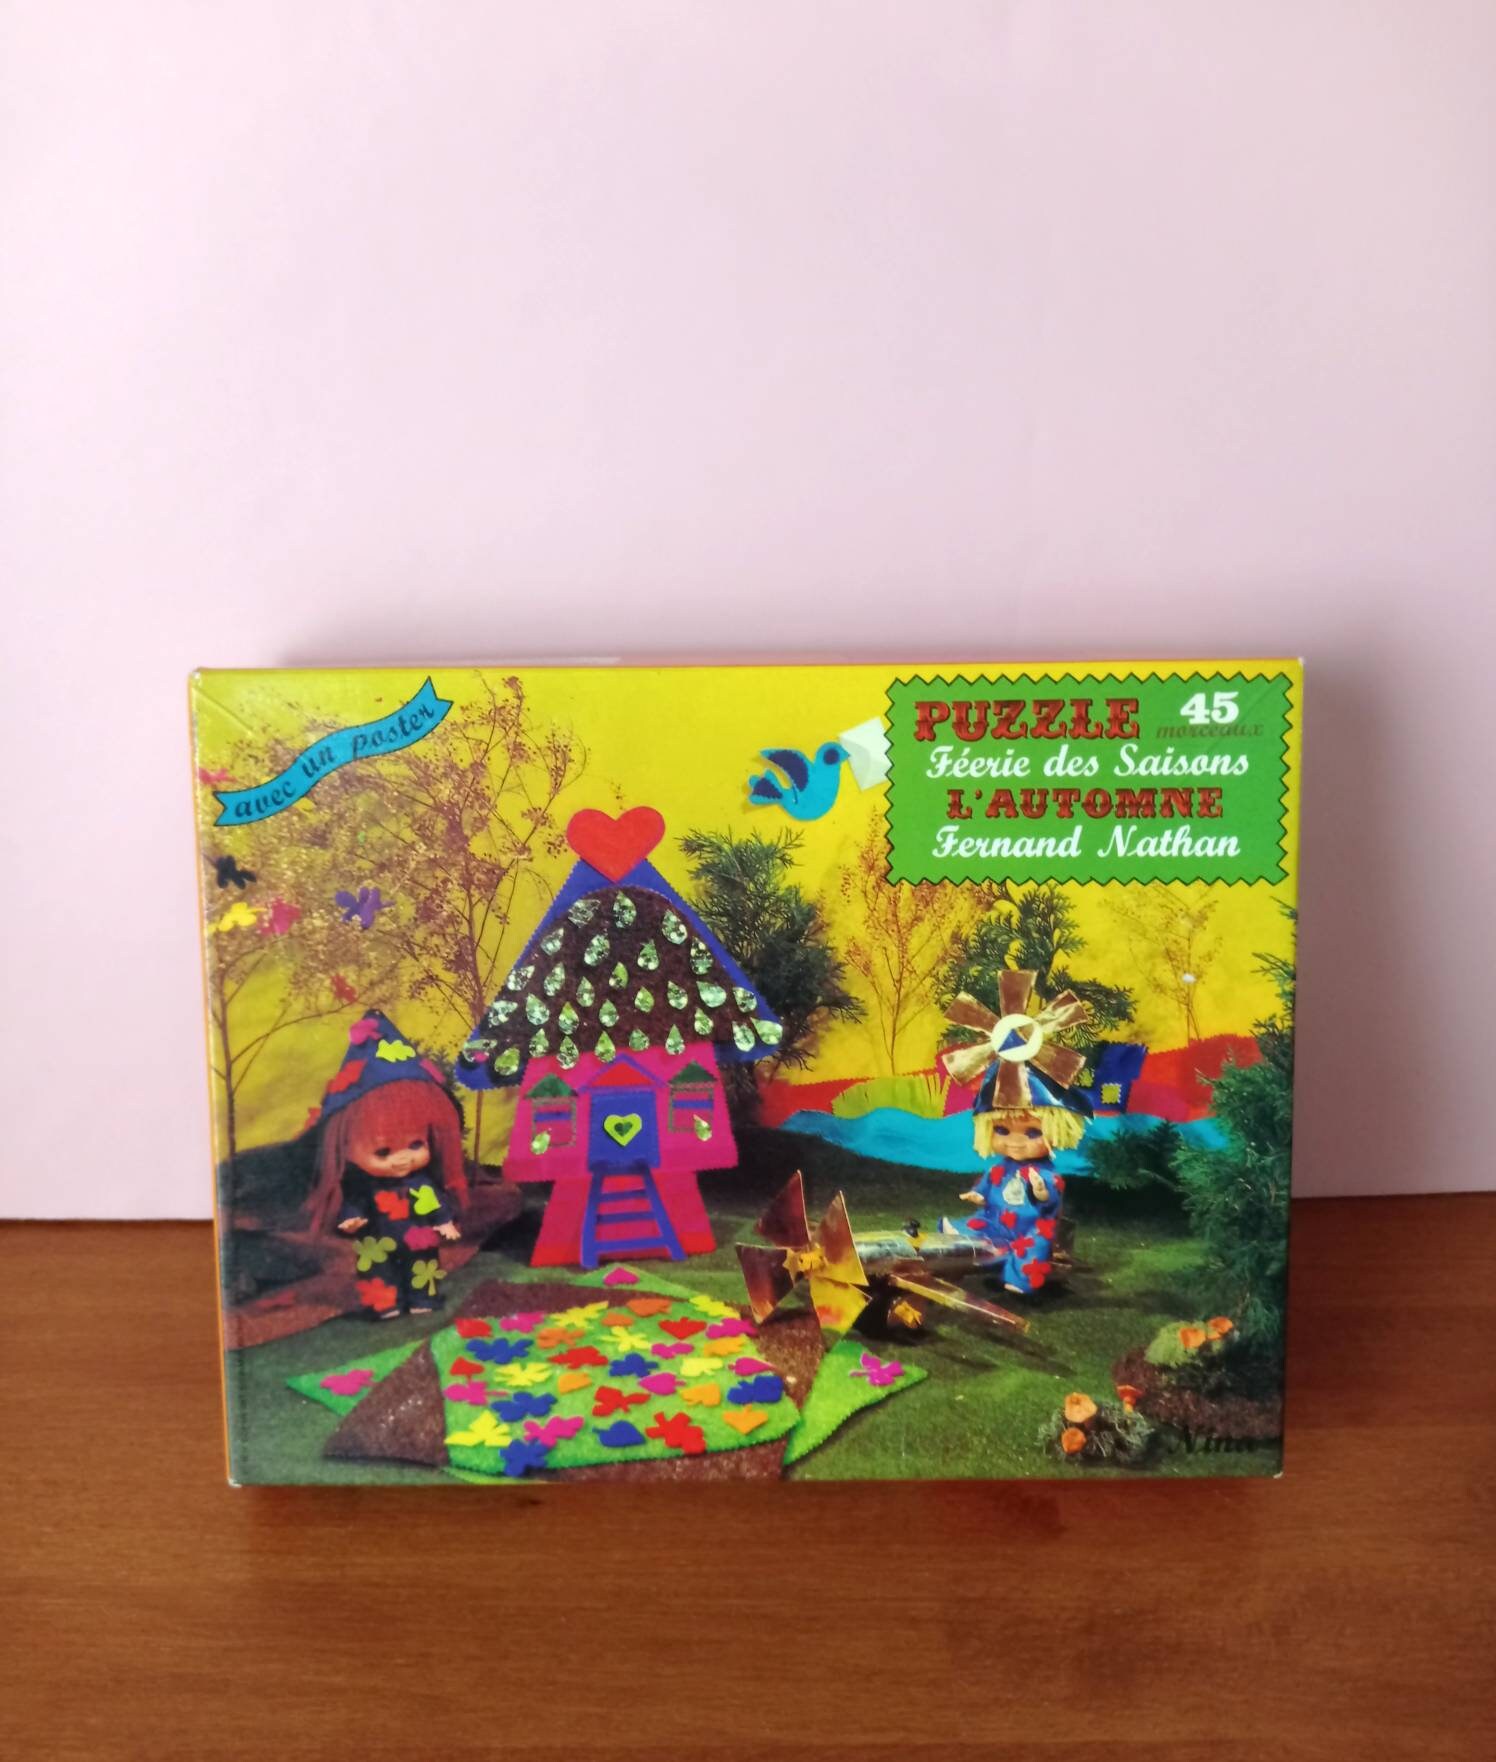 Nathan puzzles - Puzzle 1000 pièces - Nathan - La féérie de Noël